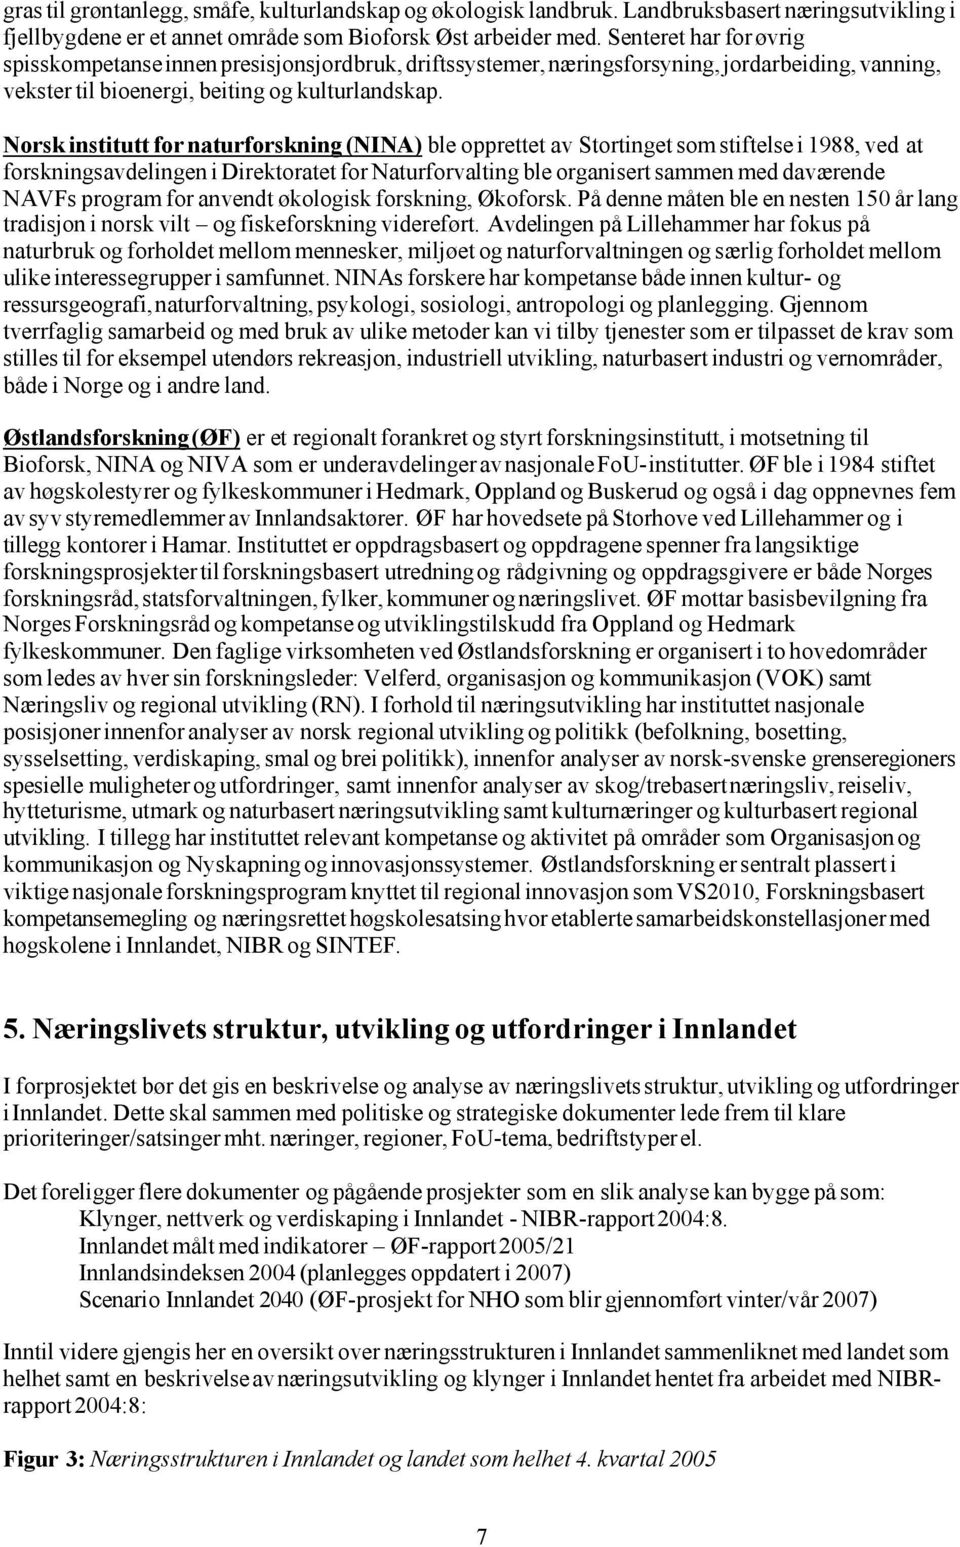 Norsk institutt for naturforskning (NINA) ble opprettet av Stortinget som stiftelse i 1988, ved at forskningsavdelingen i Direktoratet for Naturforvalting ble organisert sammen med daværende NAVFs